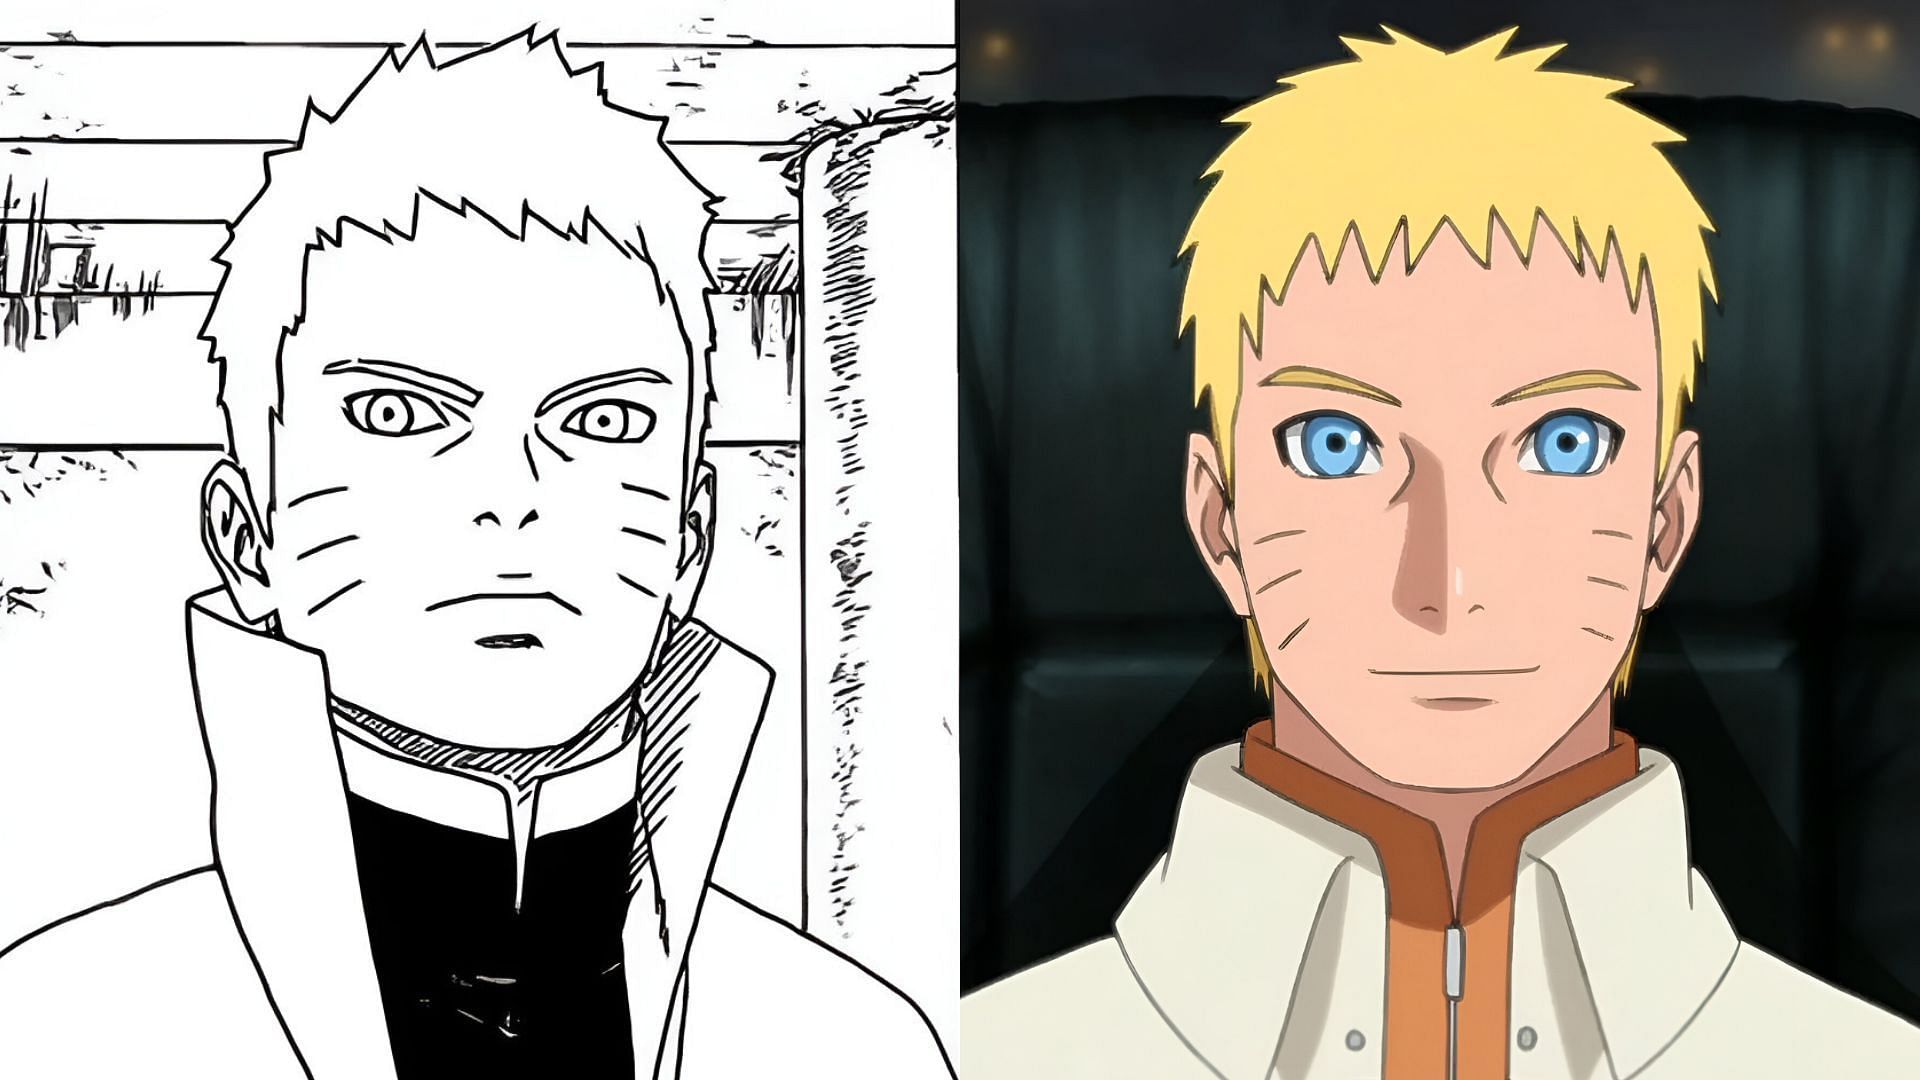 Naruto as seen in the Boruto manga and anime (Image via Shueisha, Studio Pierrot)